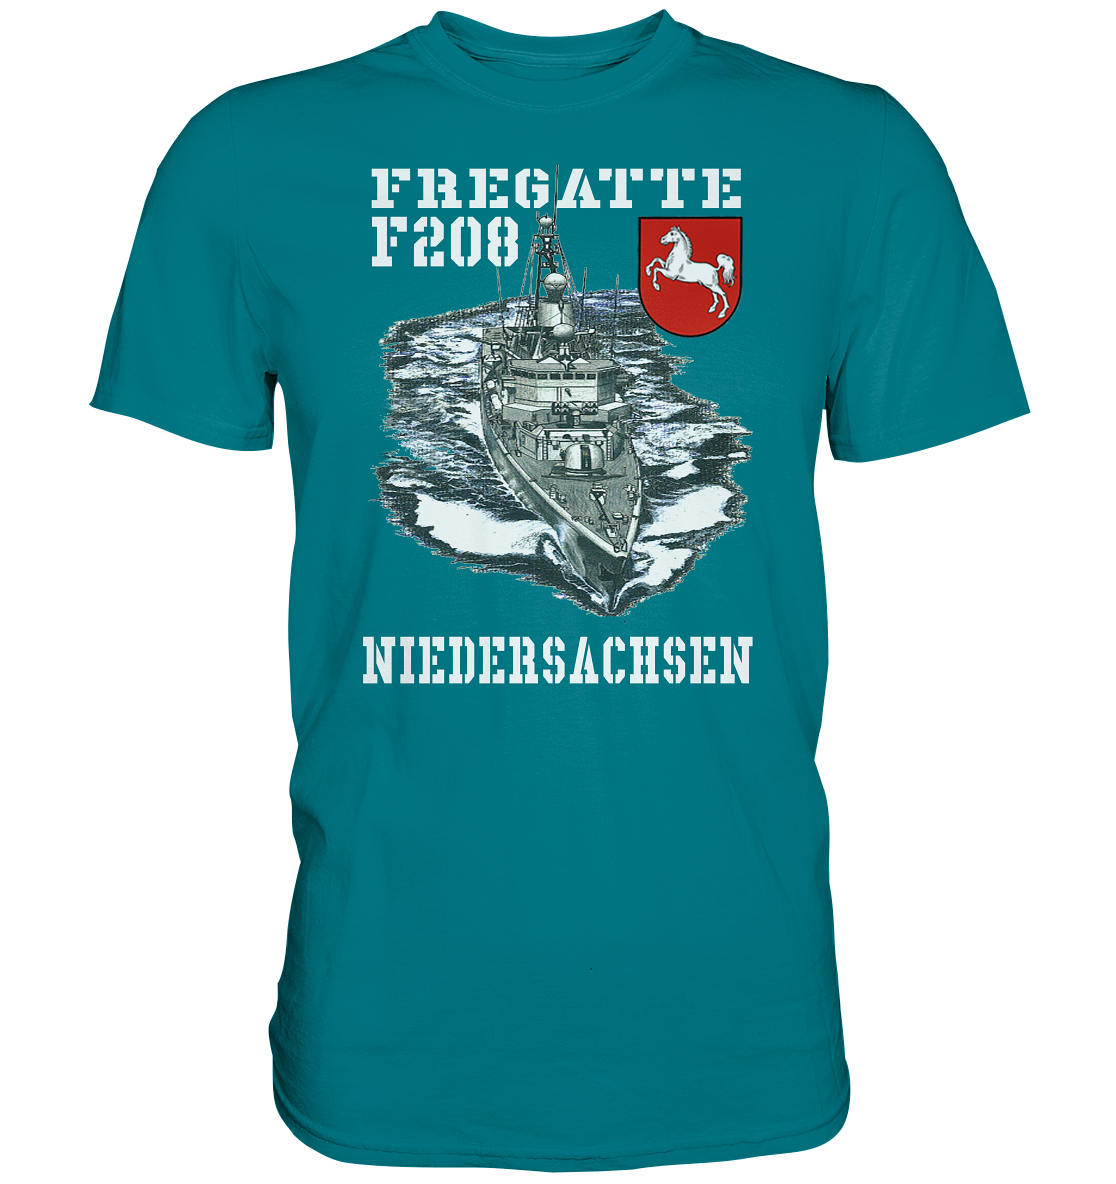 Fregatte F208 NIEDERSACHSEN - Premium Shirt